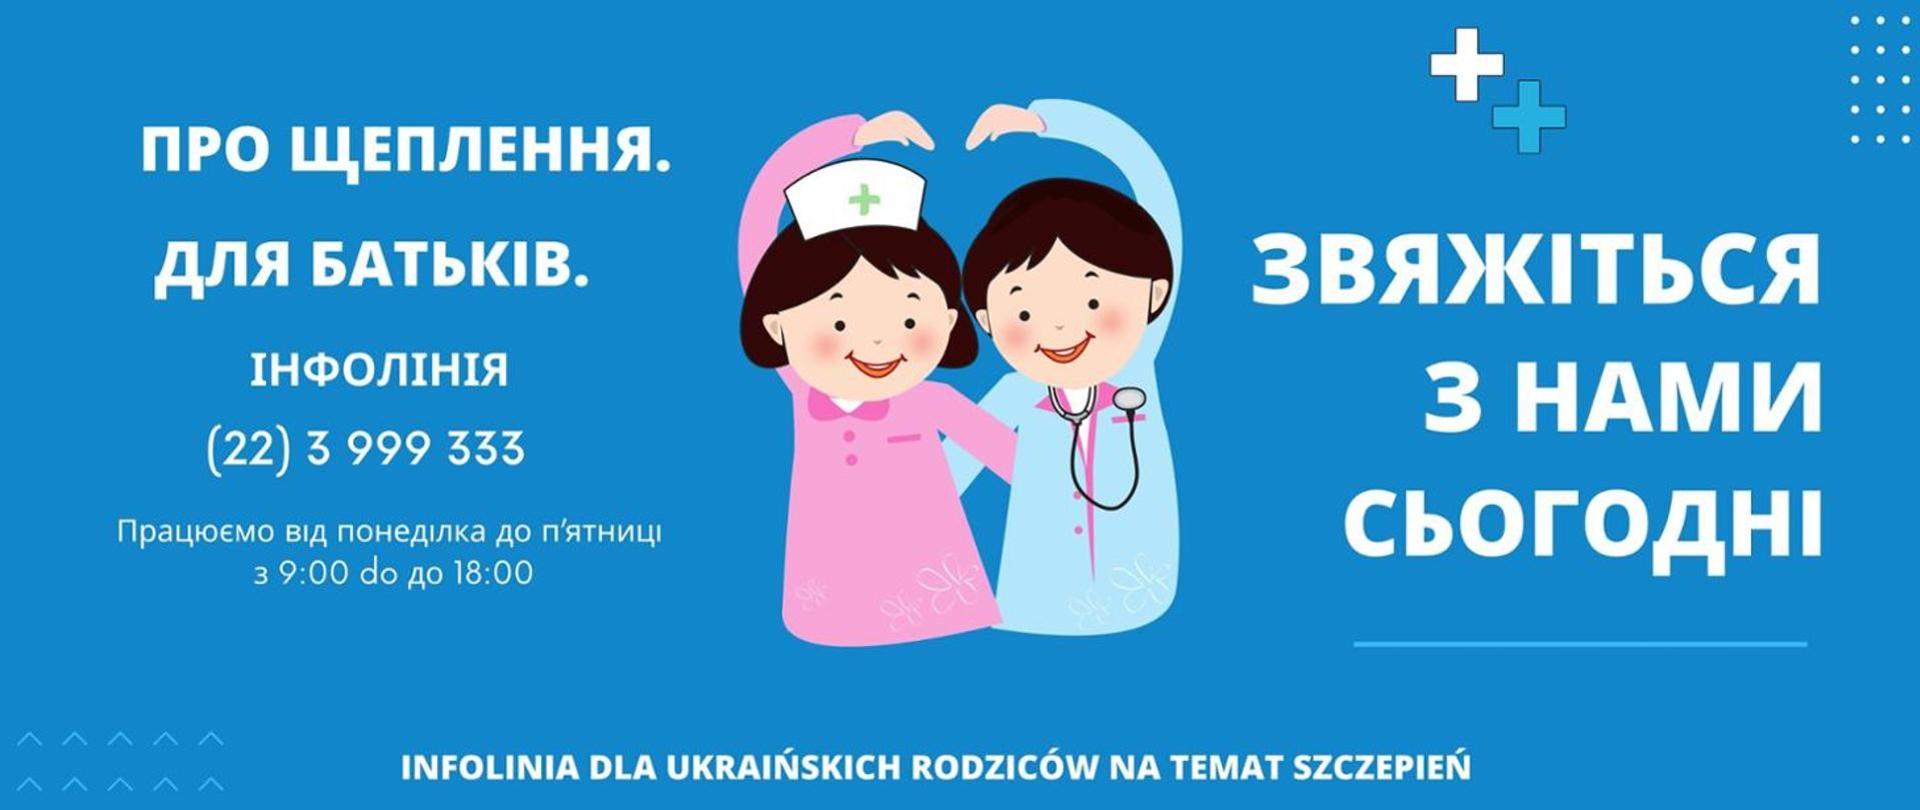 Infolinia dla ukraińskich rodziców na temat szczepień 